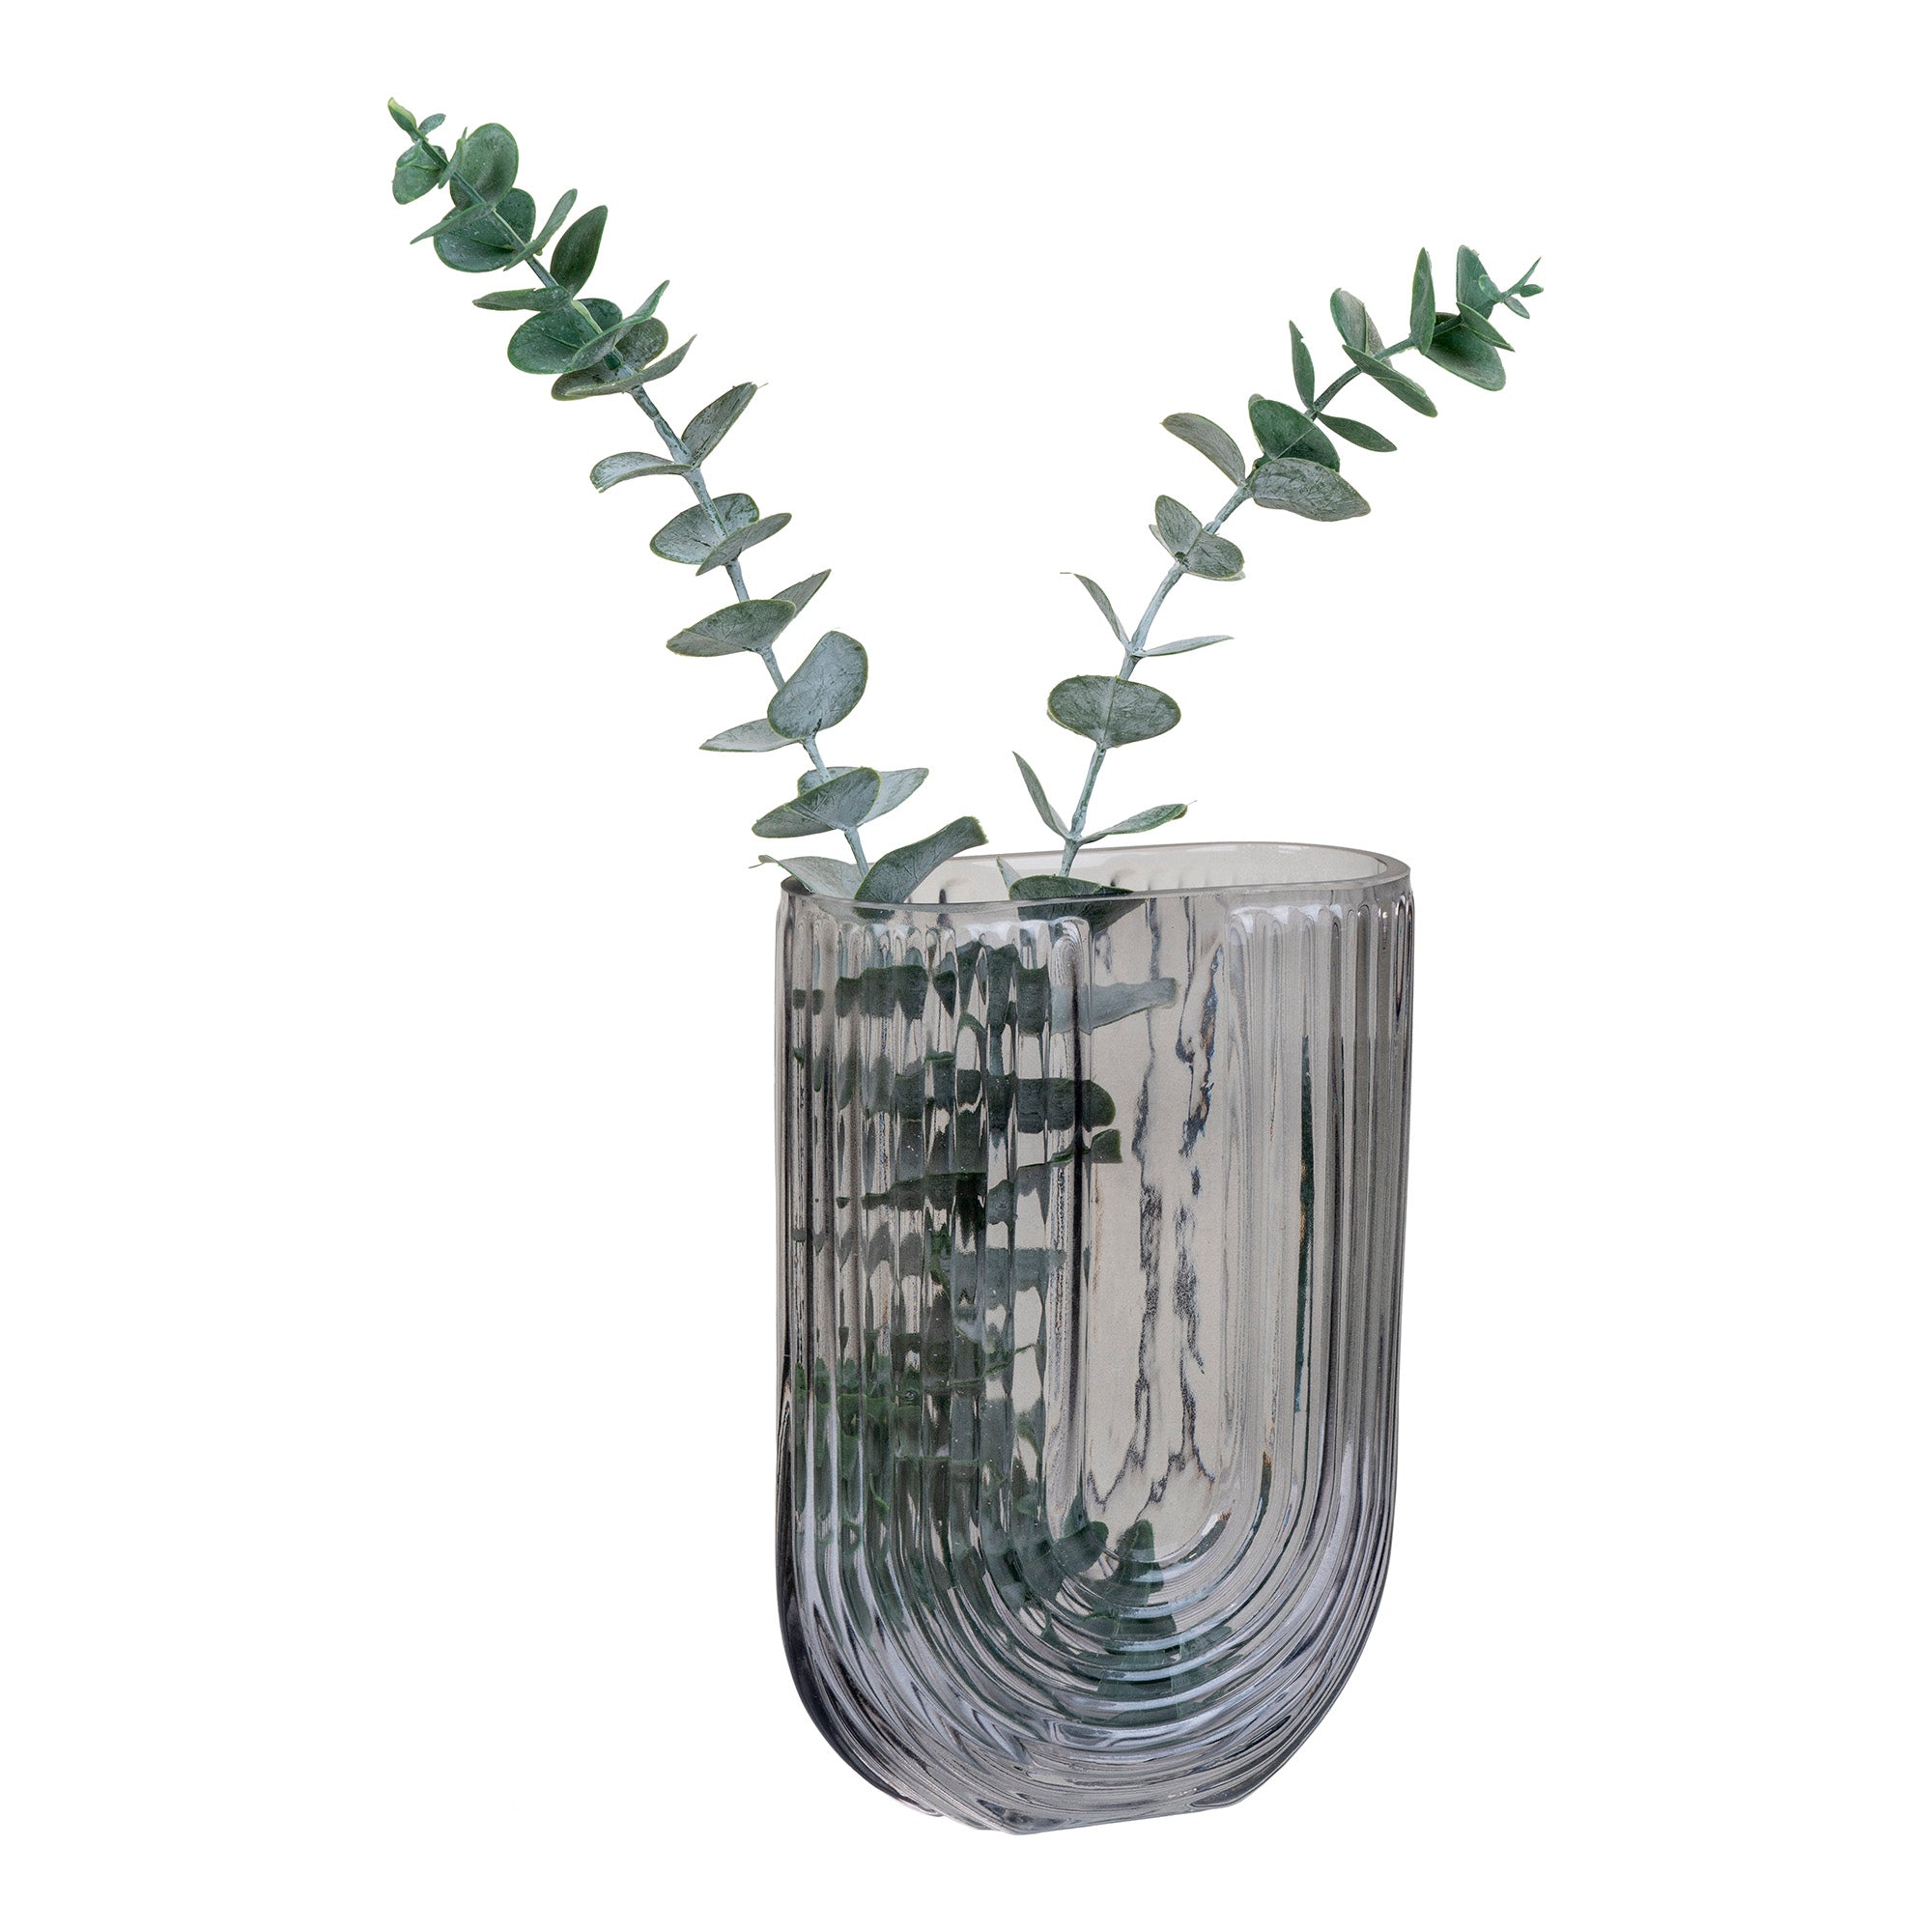 Vase - Vase I Glas, Smoked, U-Form, 13X6X19 Cm ⎮ 5713917019748 ⎮ 4441200 